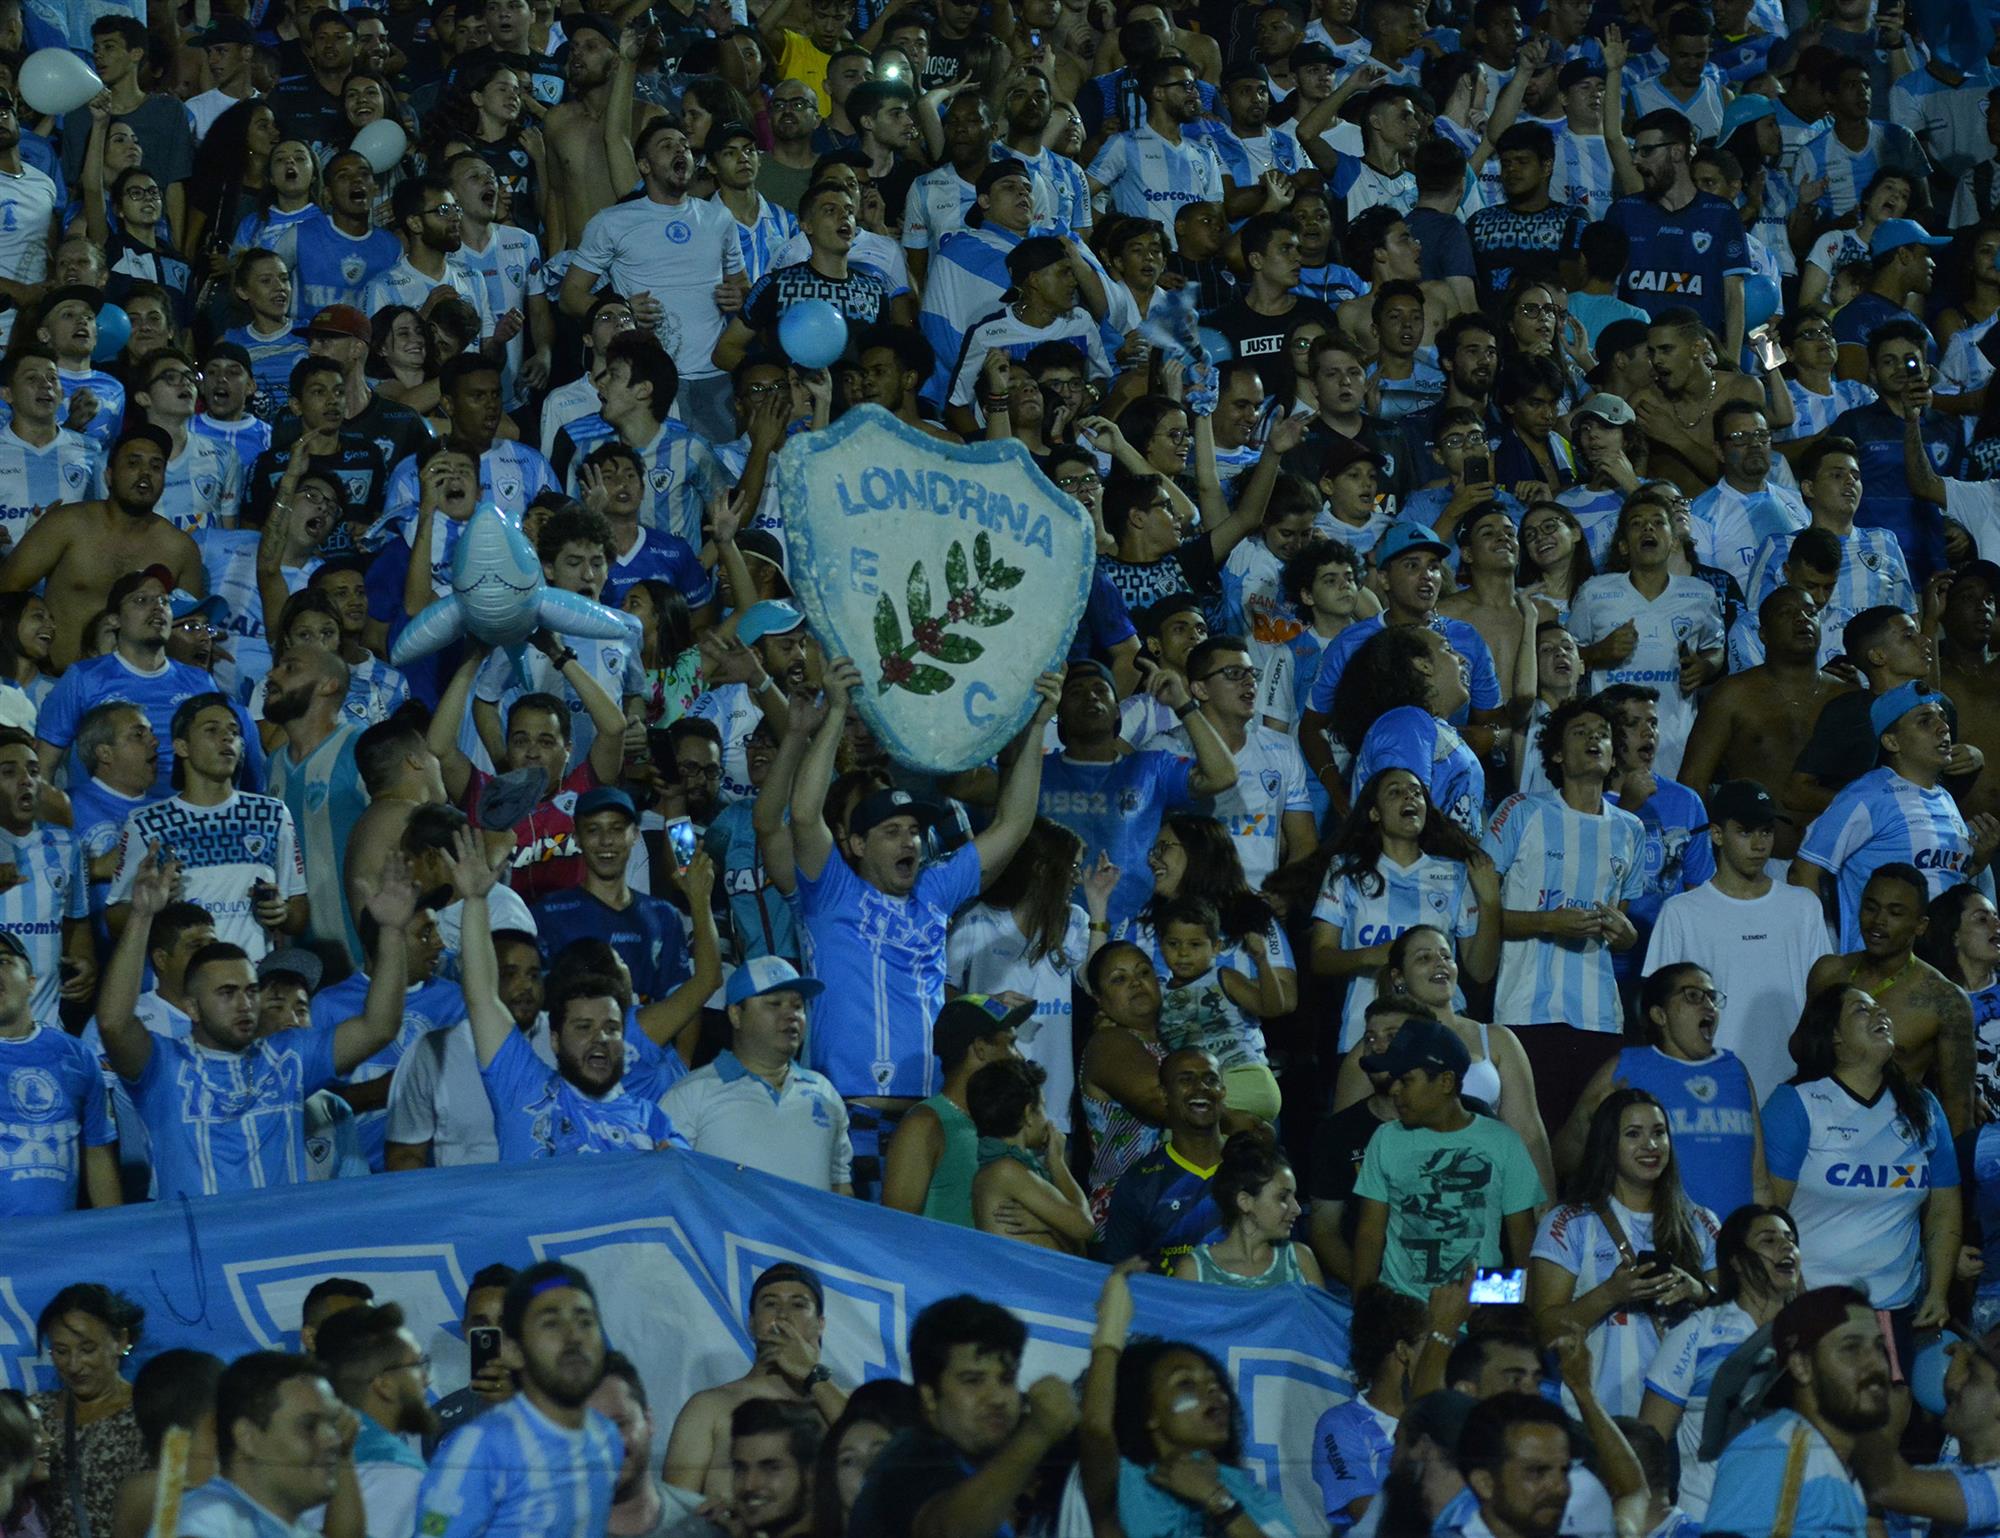 Ingressos à venda para Londrina e Athletico Paranaense